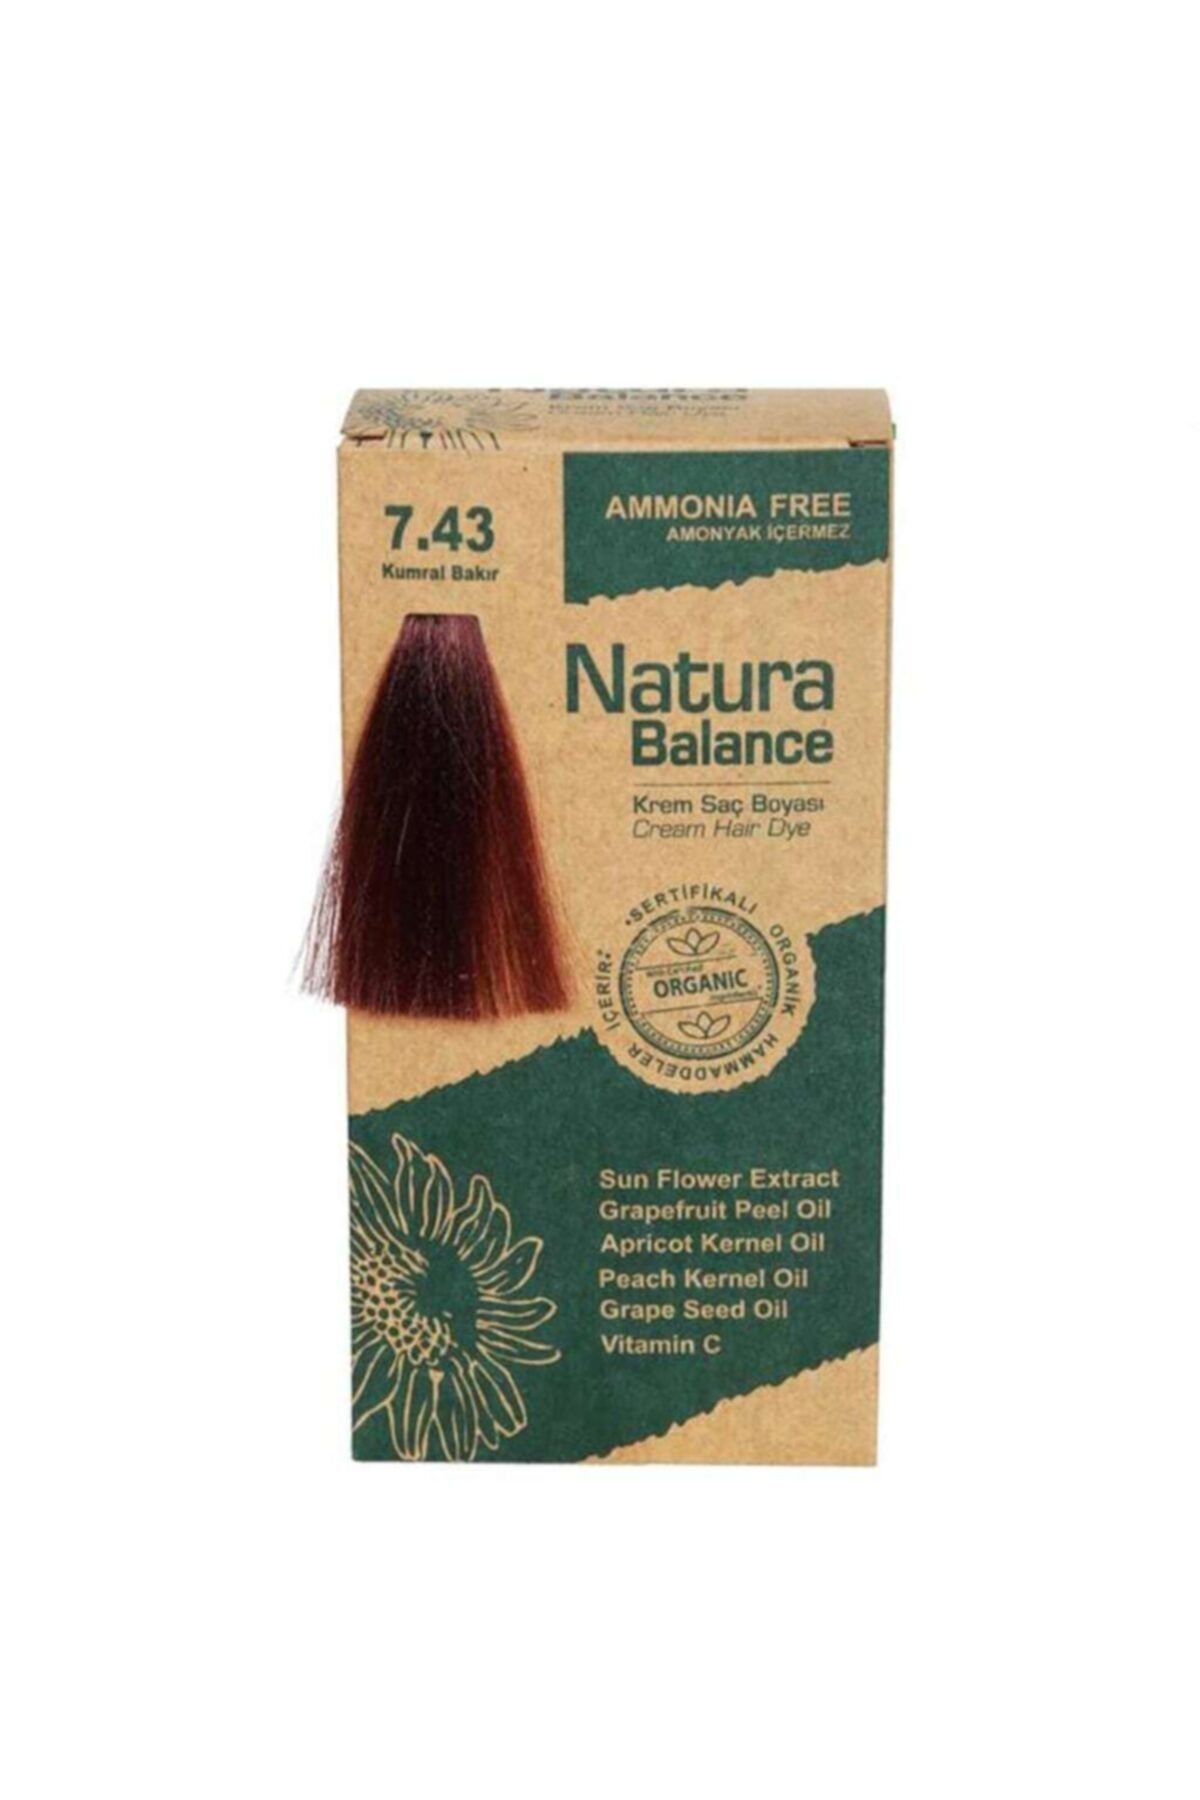 Natura Balance Krem Saç Boyası 7.43 Kumral Bakır Organik